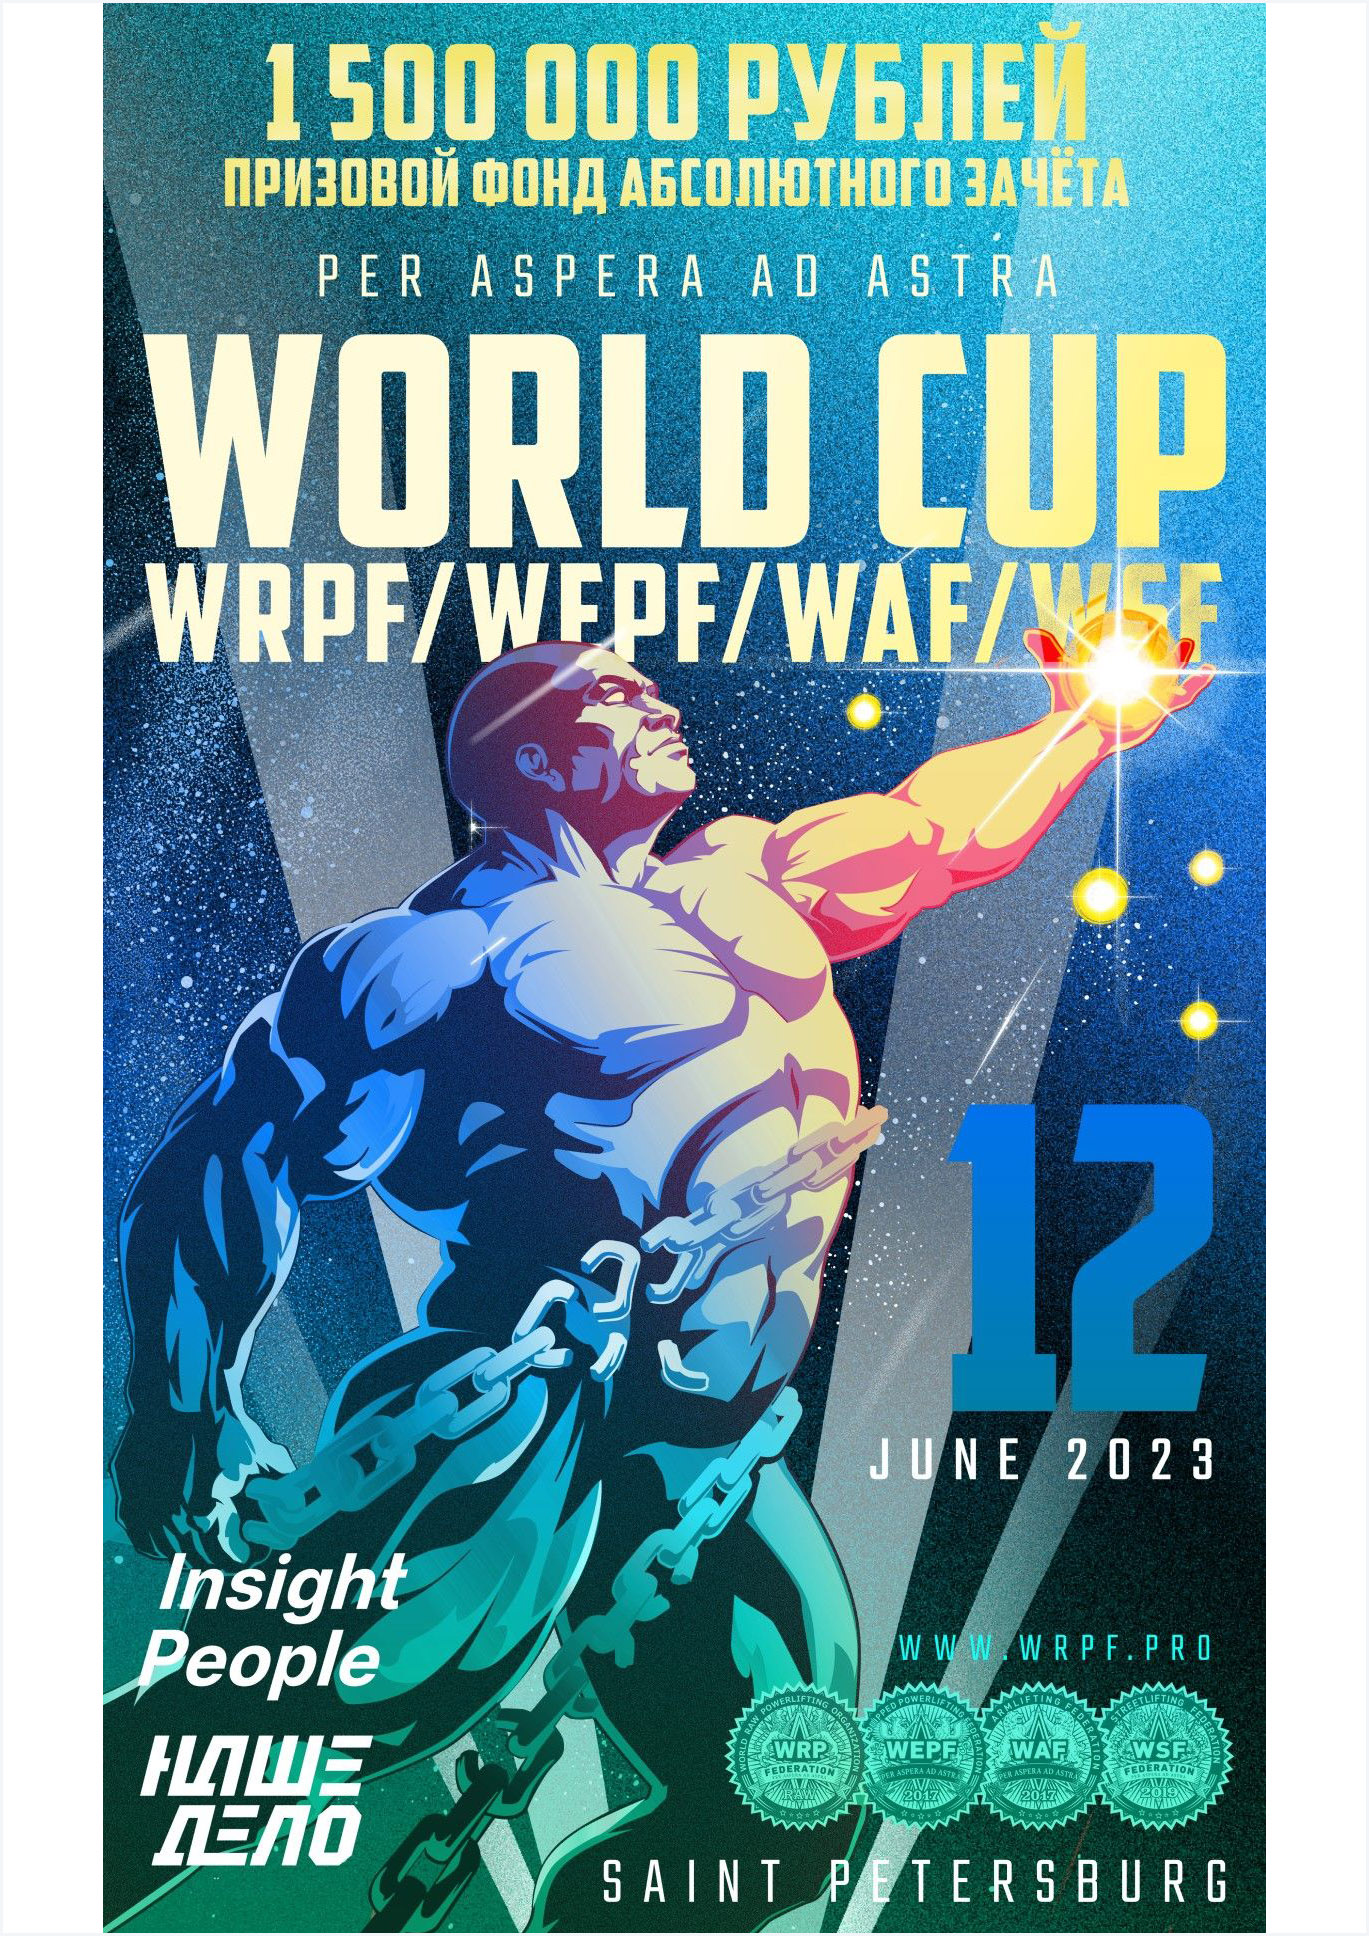 Кубок мира по пауэрлифтингу федерации WRPF 12 июня 2023 года Название Футбольная ал., 8, Санкт-Петербург 